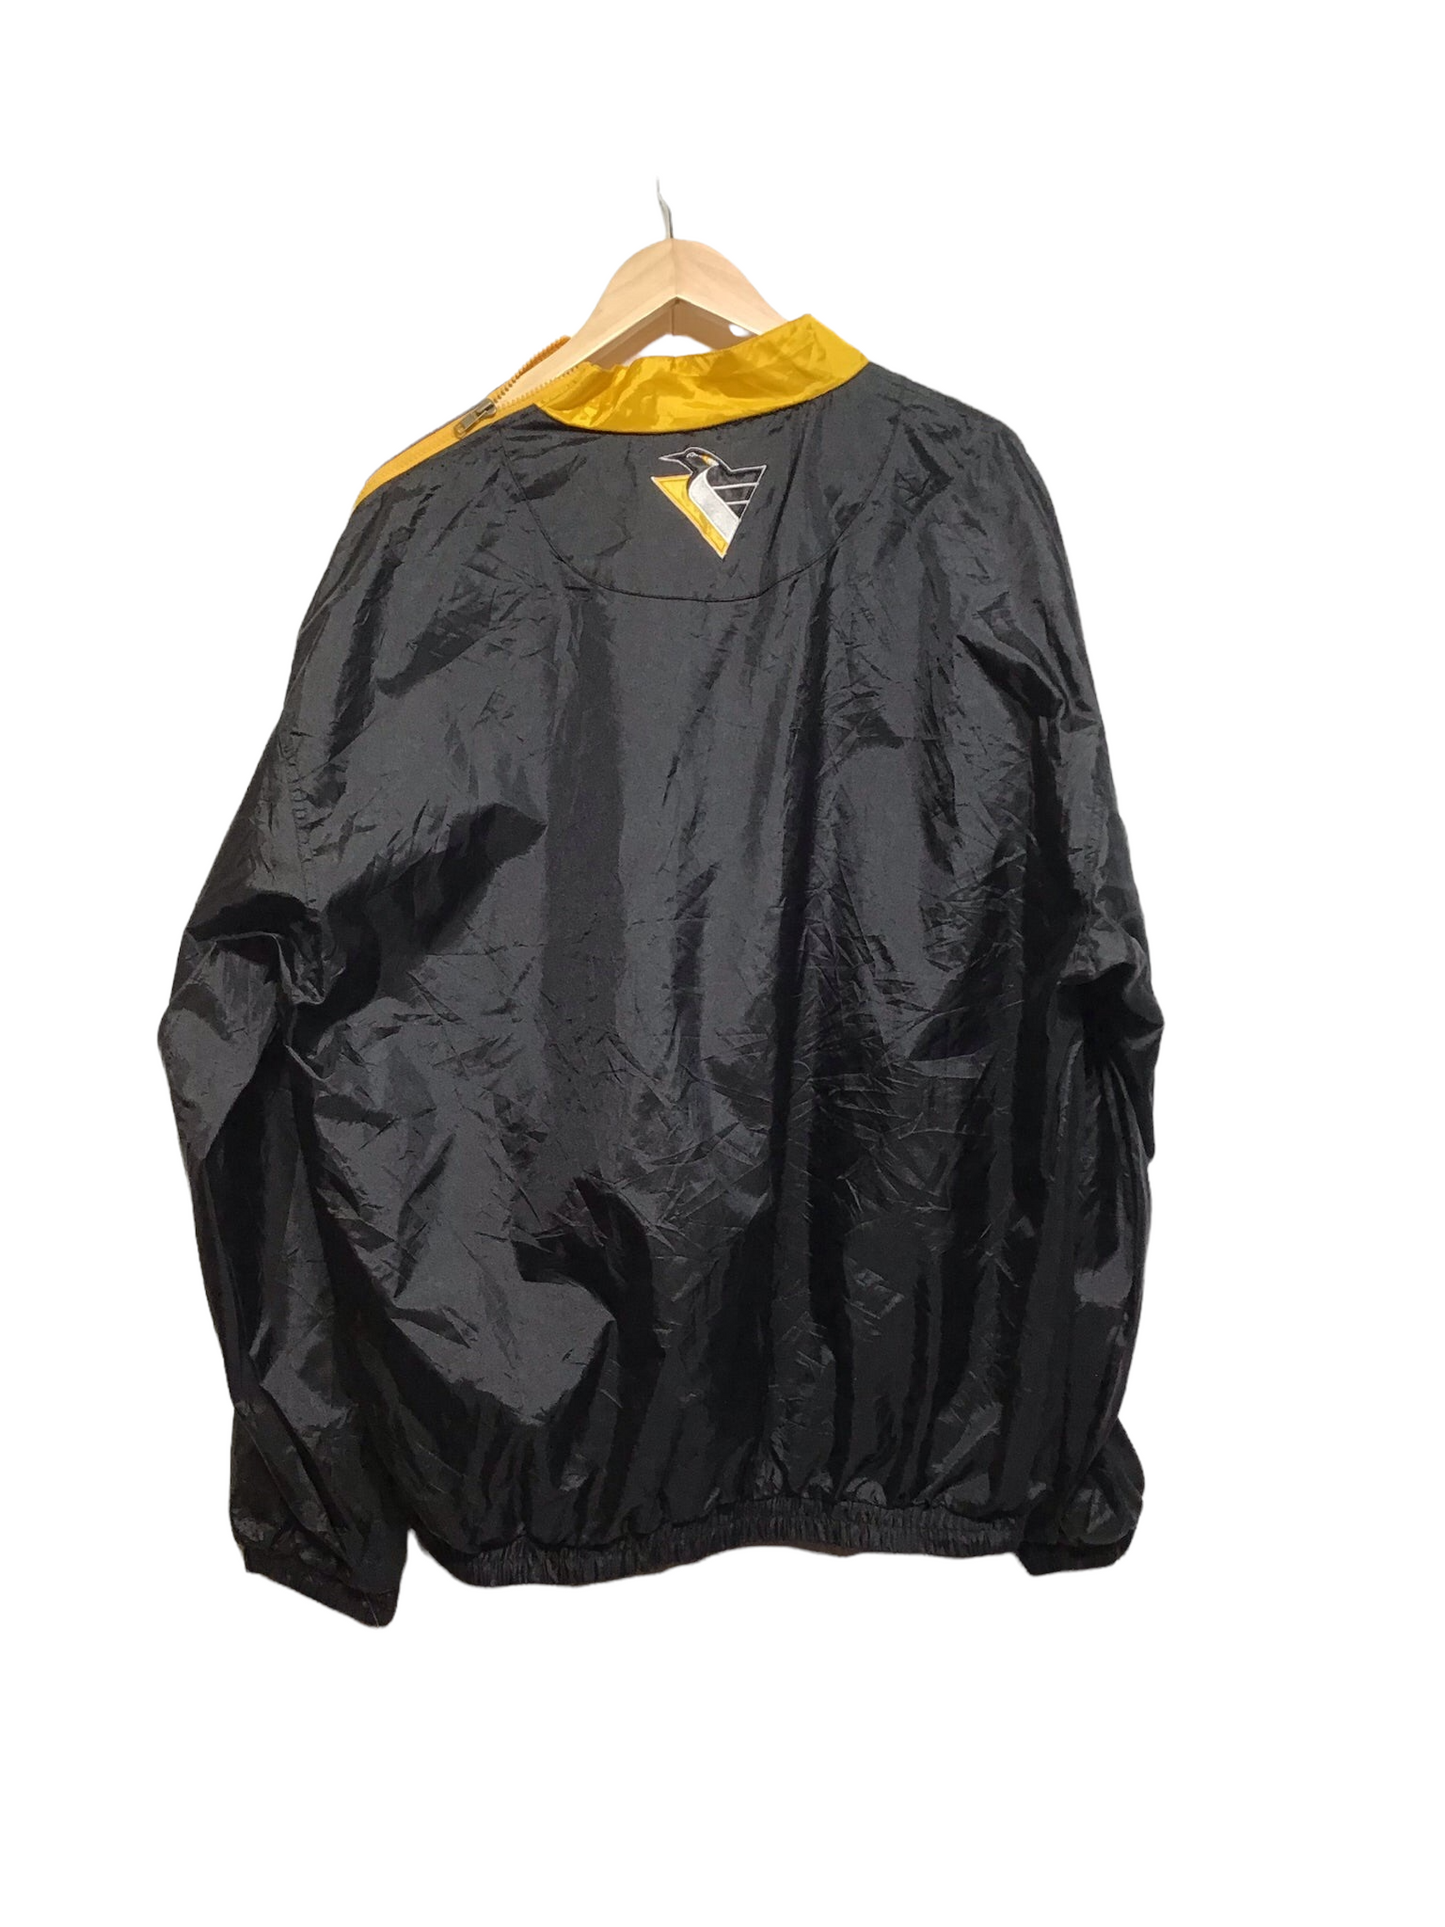 Penguins Raincoat (Size XL)